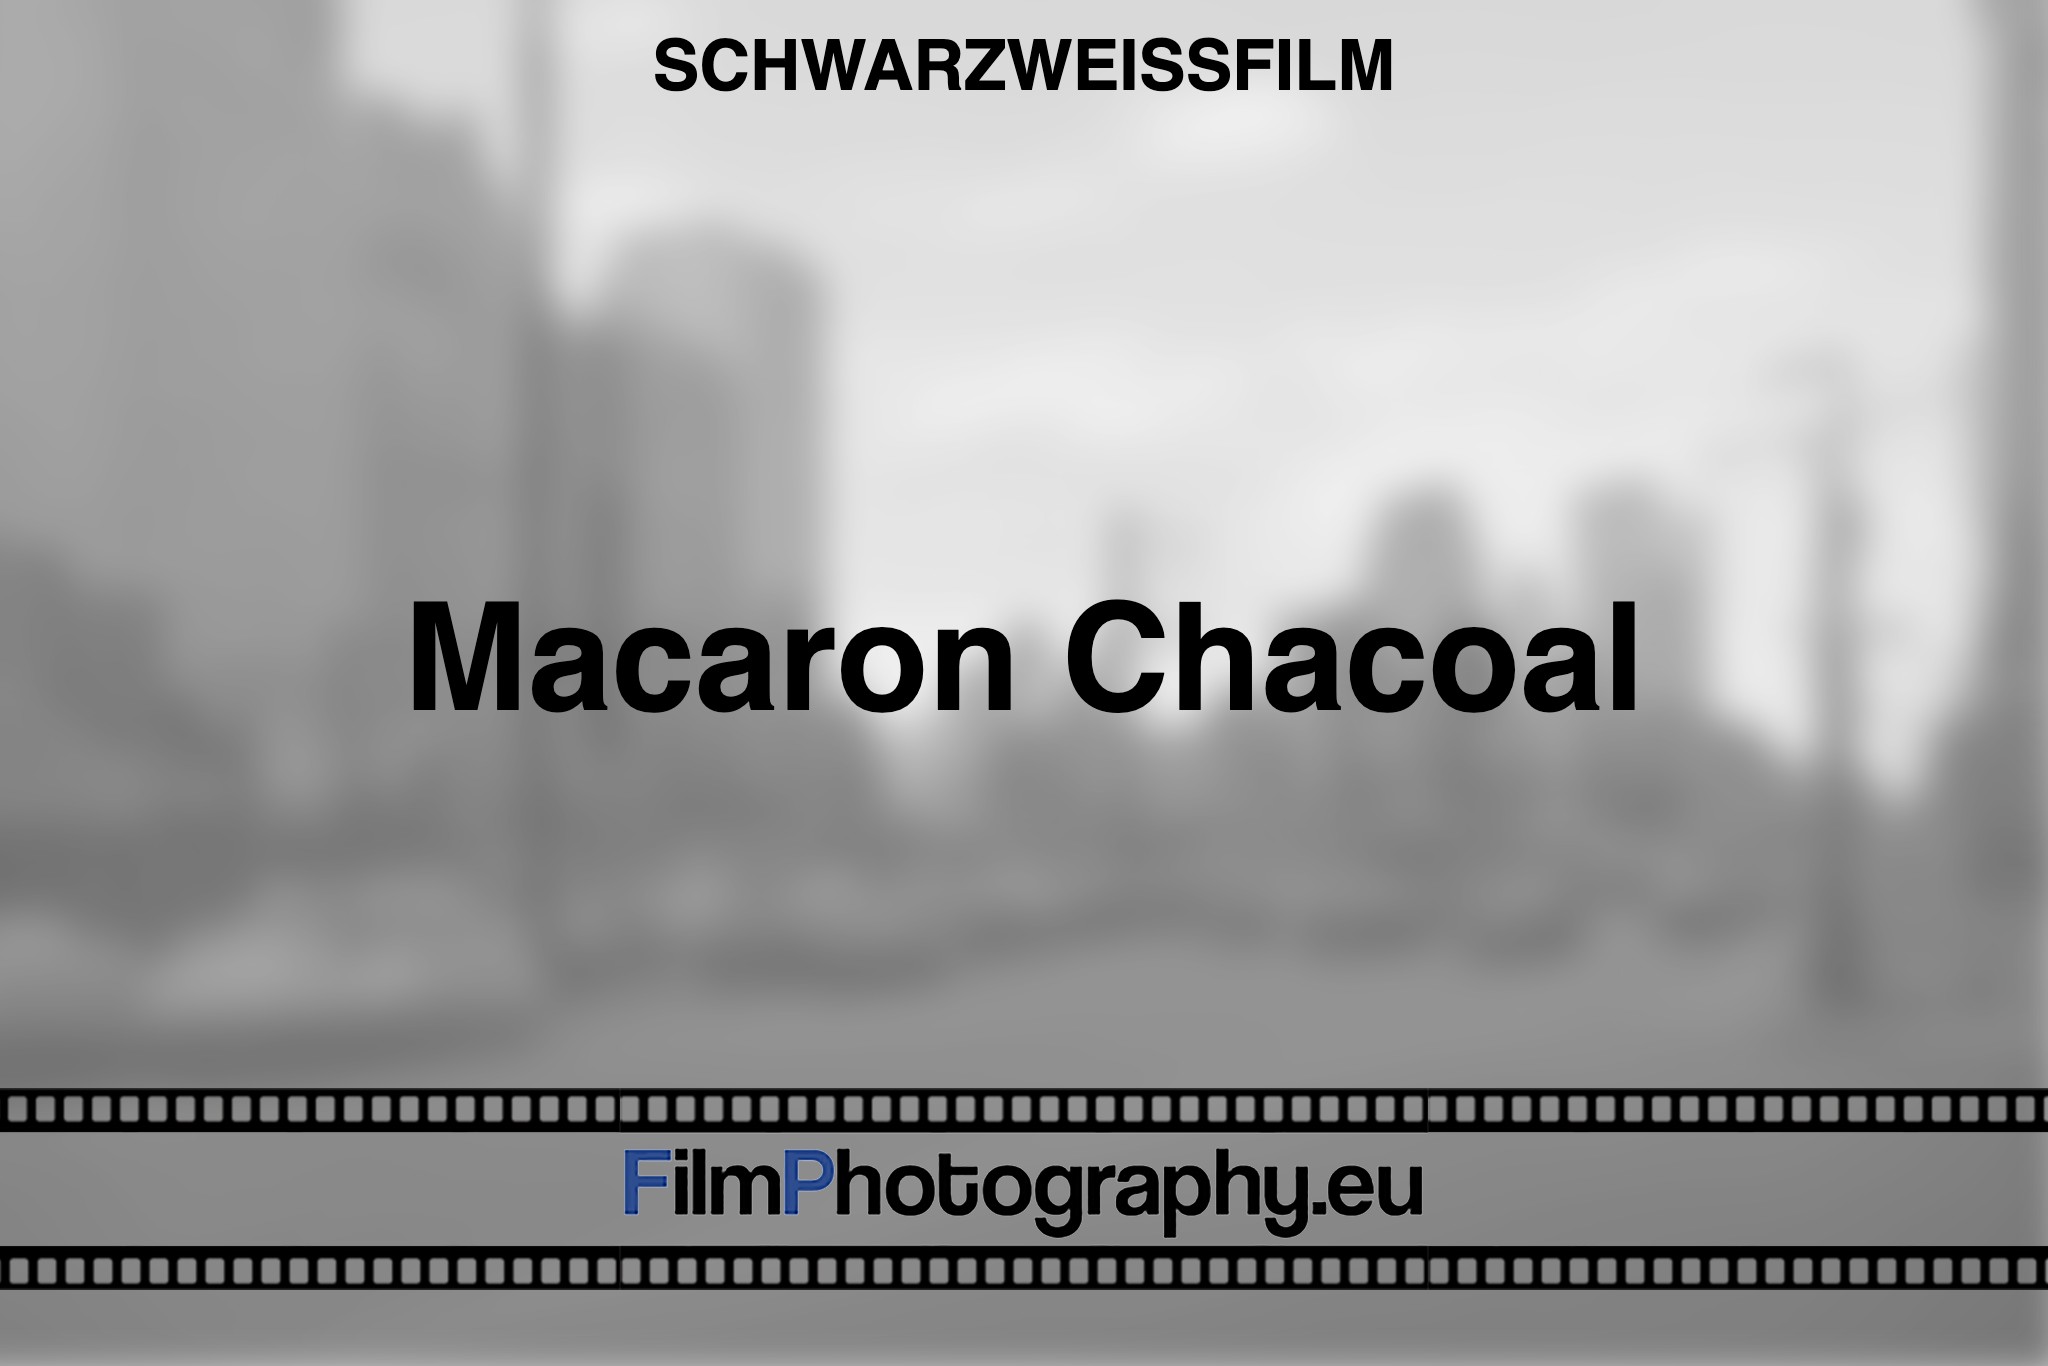 macaron-chacoal-schwarzweißfilm-bnv